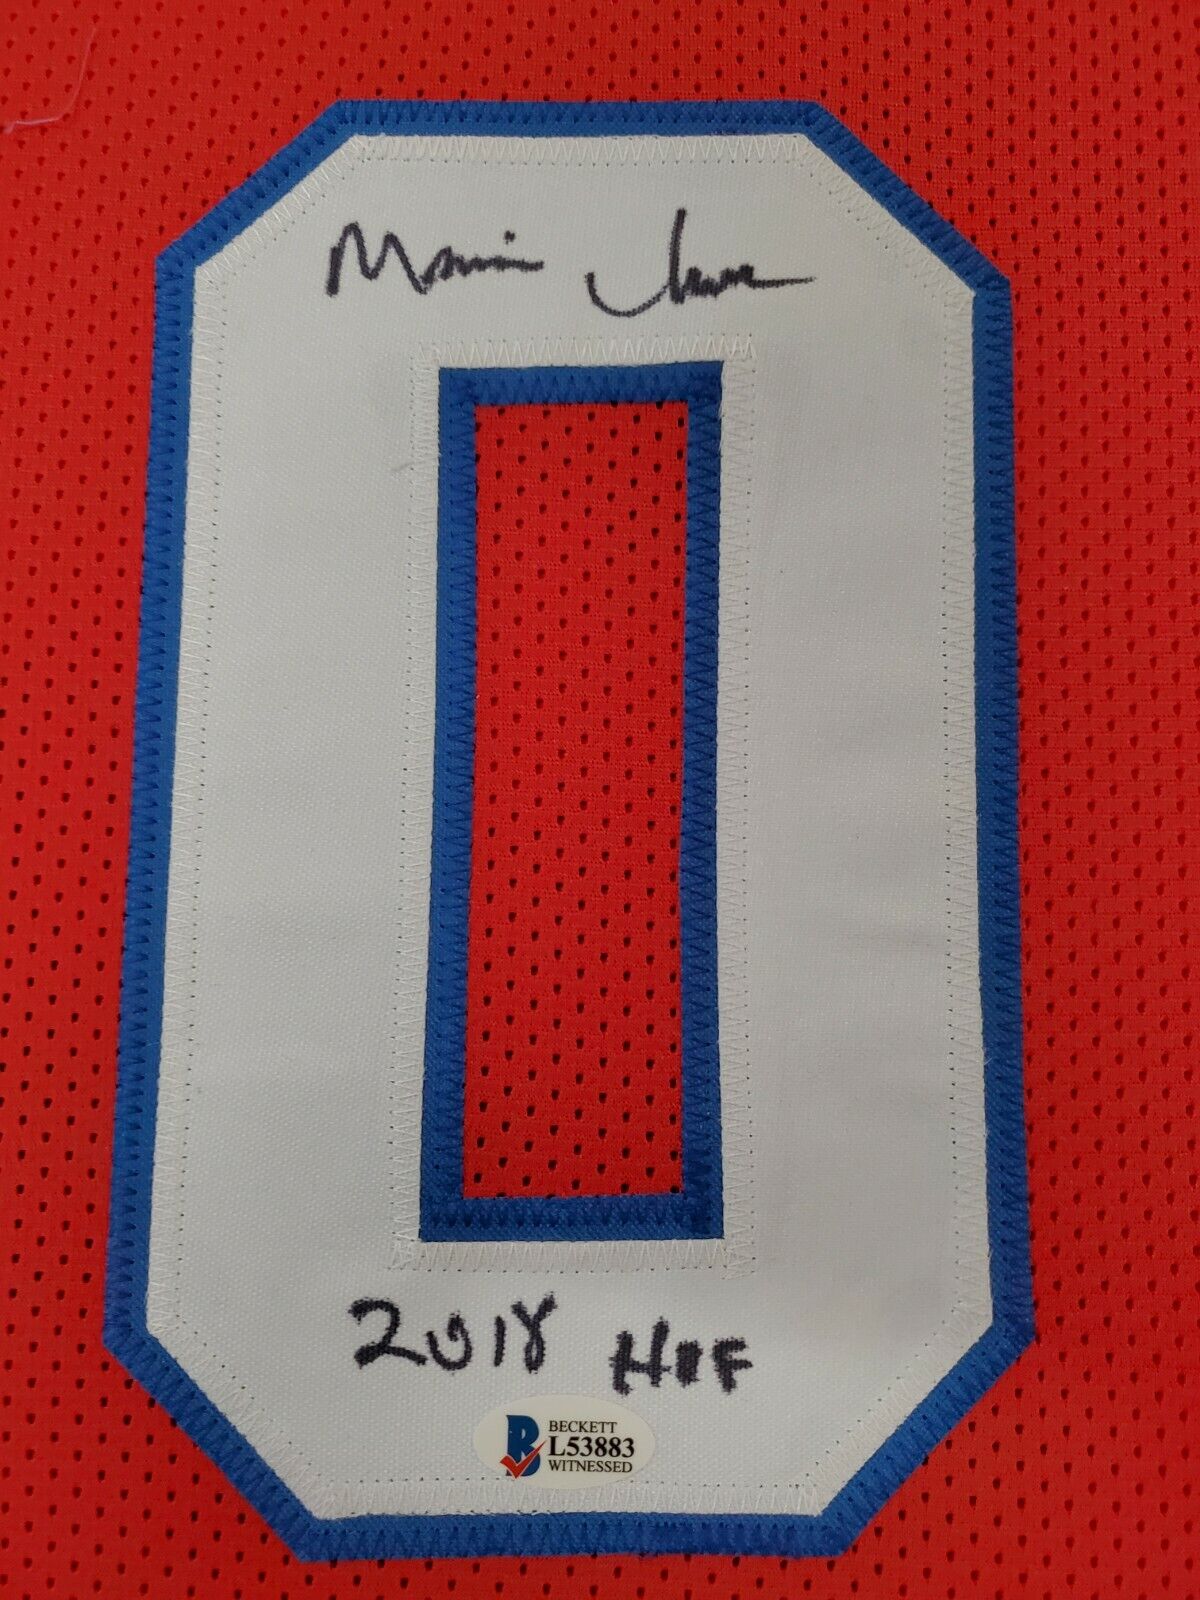 MVP Authentics Framed Philadelphia 76Ers "Mo" Maurice Cheeks Autographed Signed Jersey Bas Coa 449.10 sports jersey framing , jersey framing